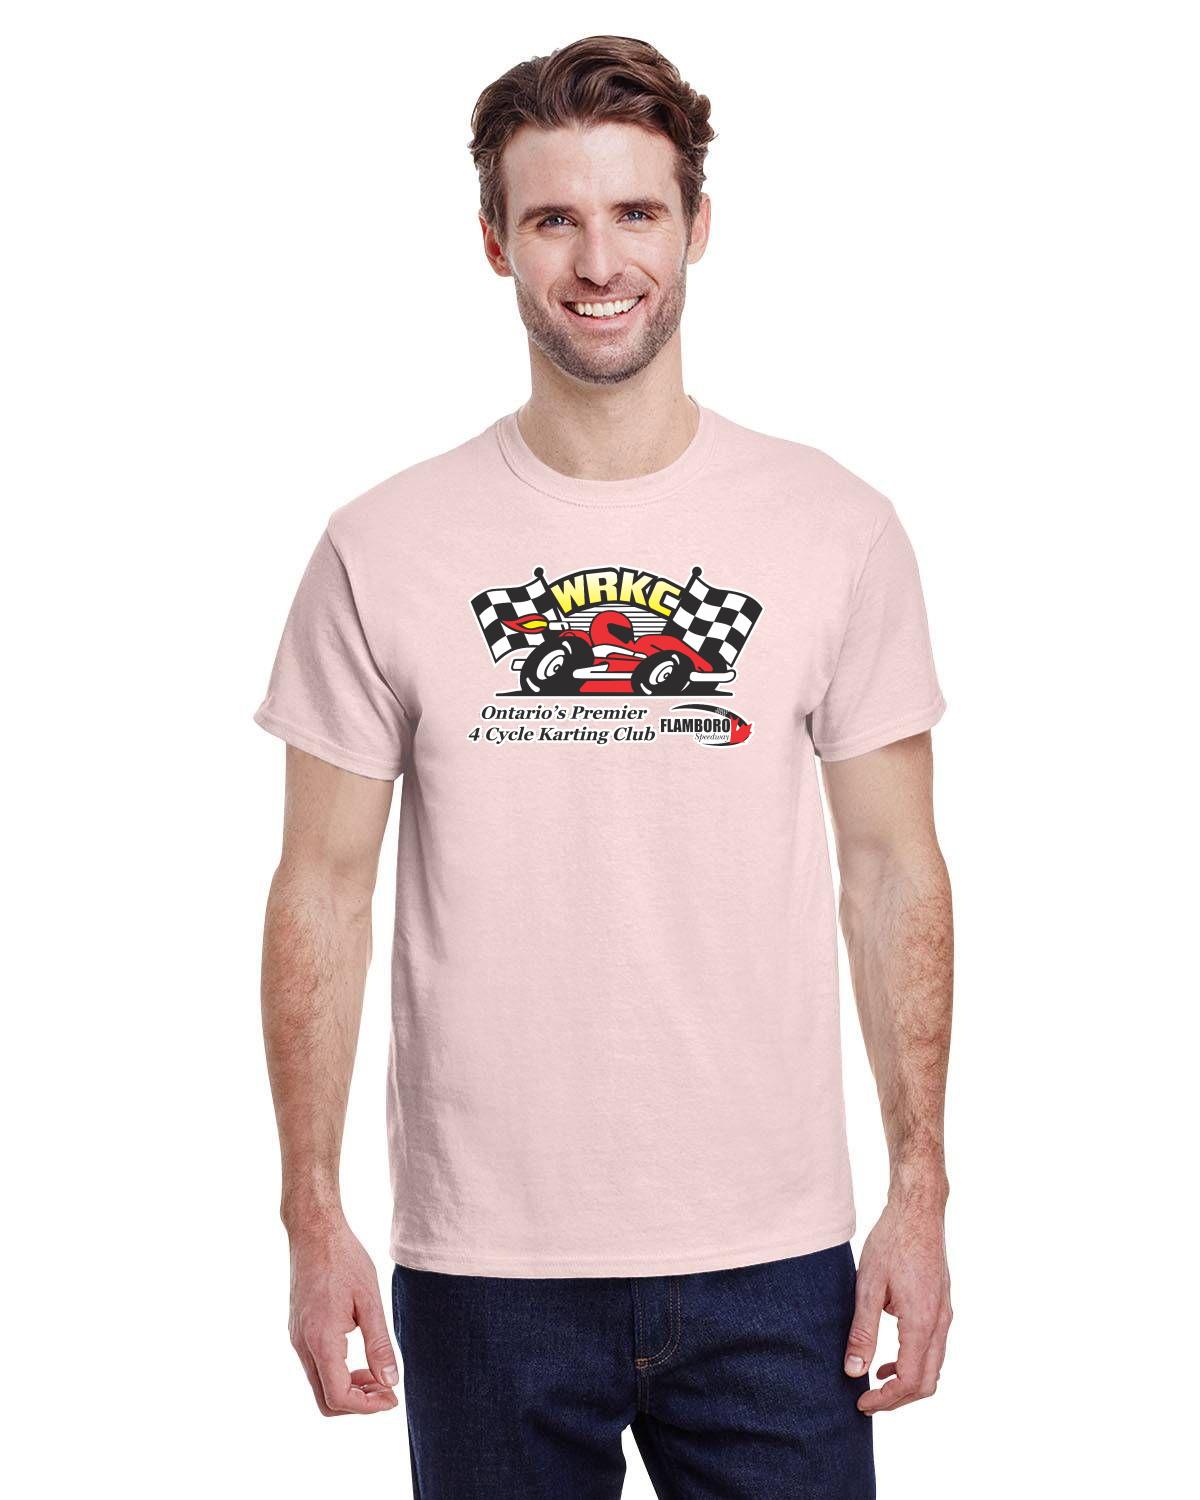 WRKC Karting Club Adult Tshirt - gildan